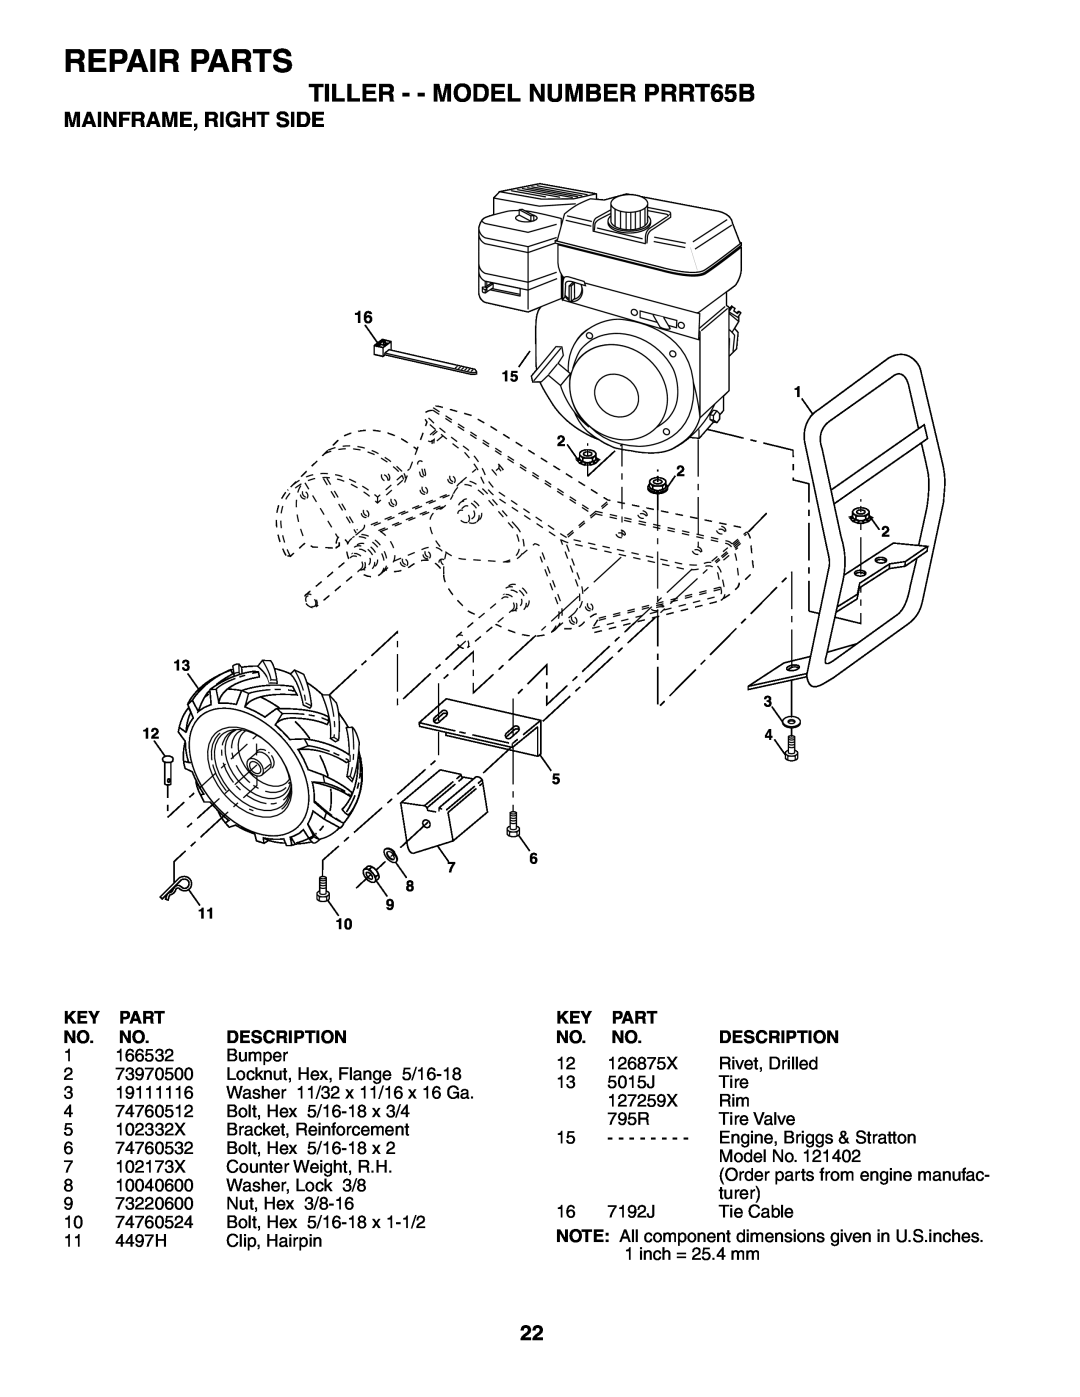 Poulan owner manual Mainframe, Right Side, 166532, Bumper, Repair Parts, TILLER - - MODEL NUMBER PRRT65B, Description 